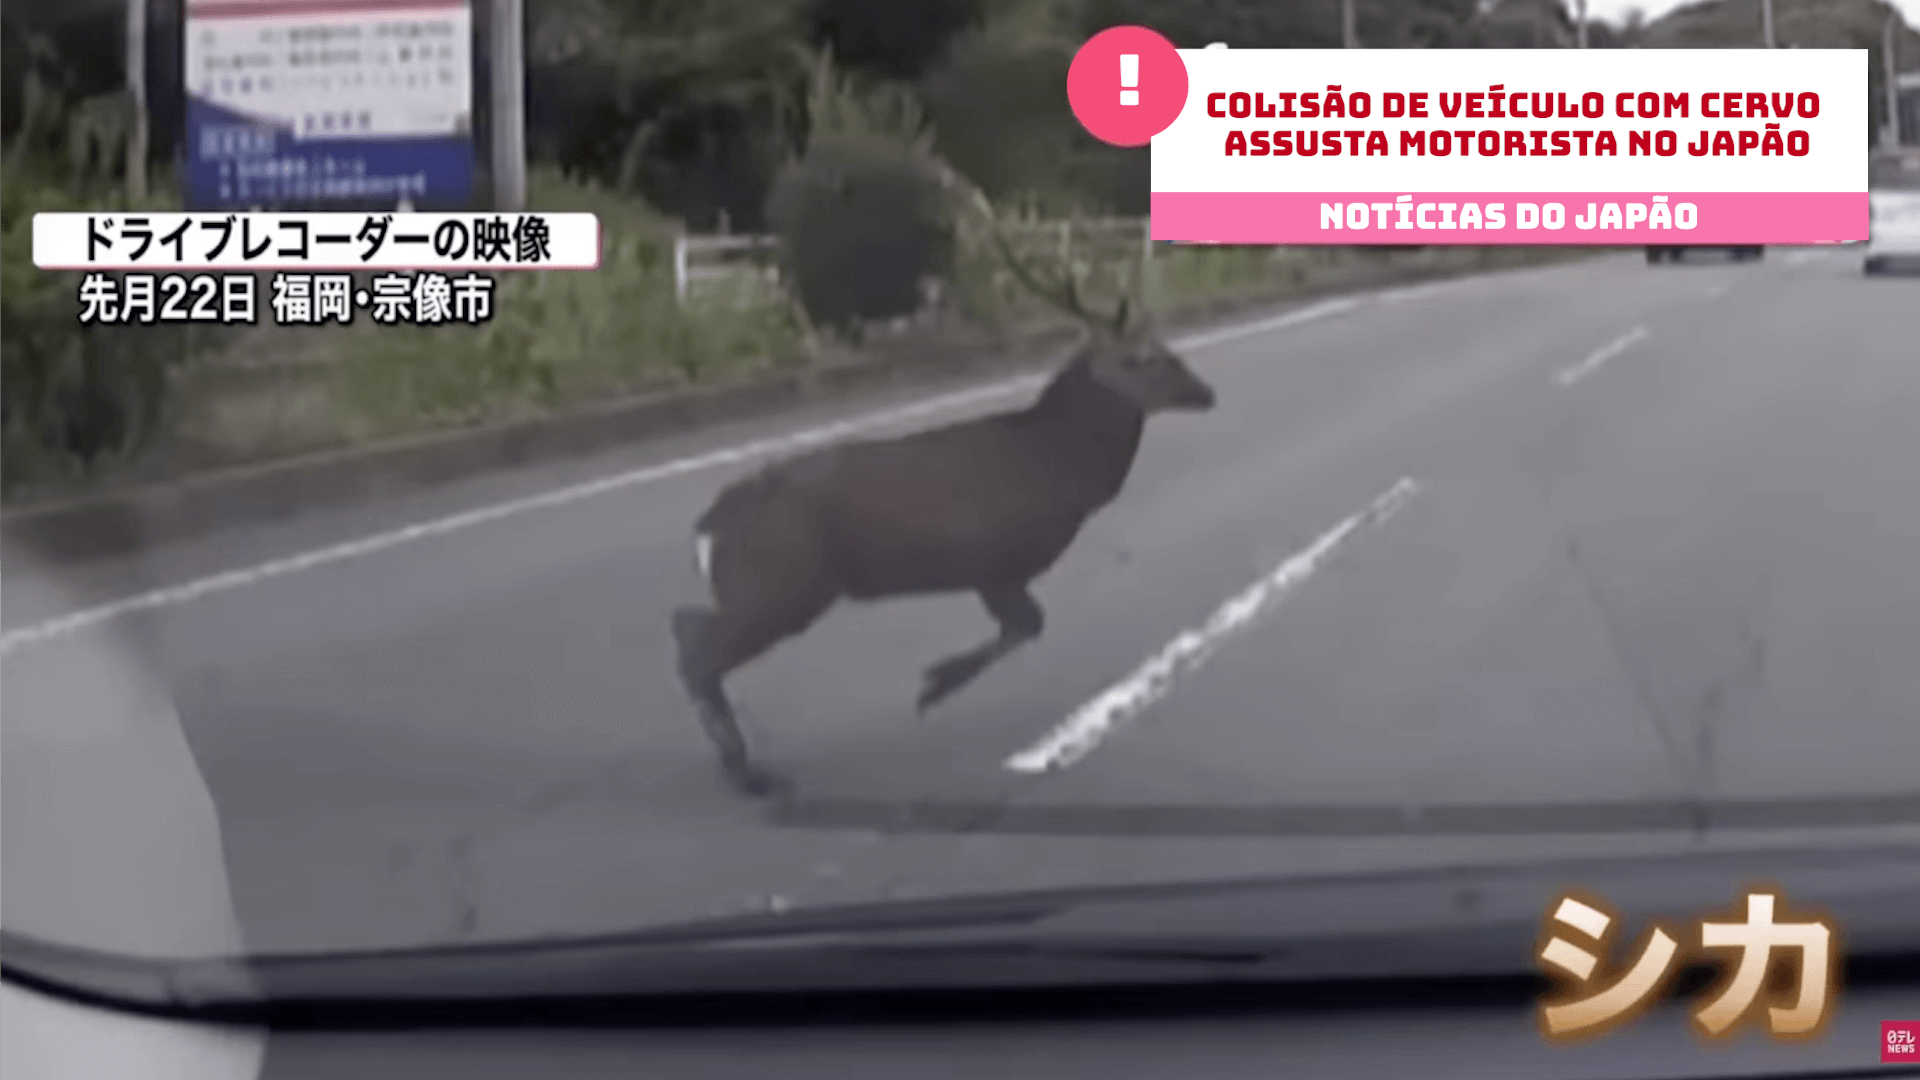 Colisão de veículo com cervo assusta motorista no Japão 